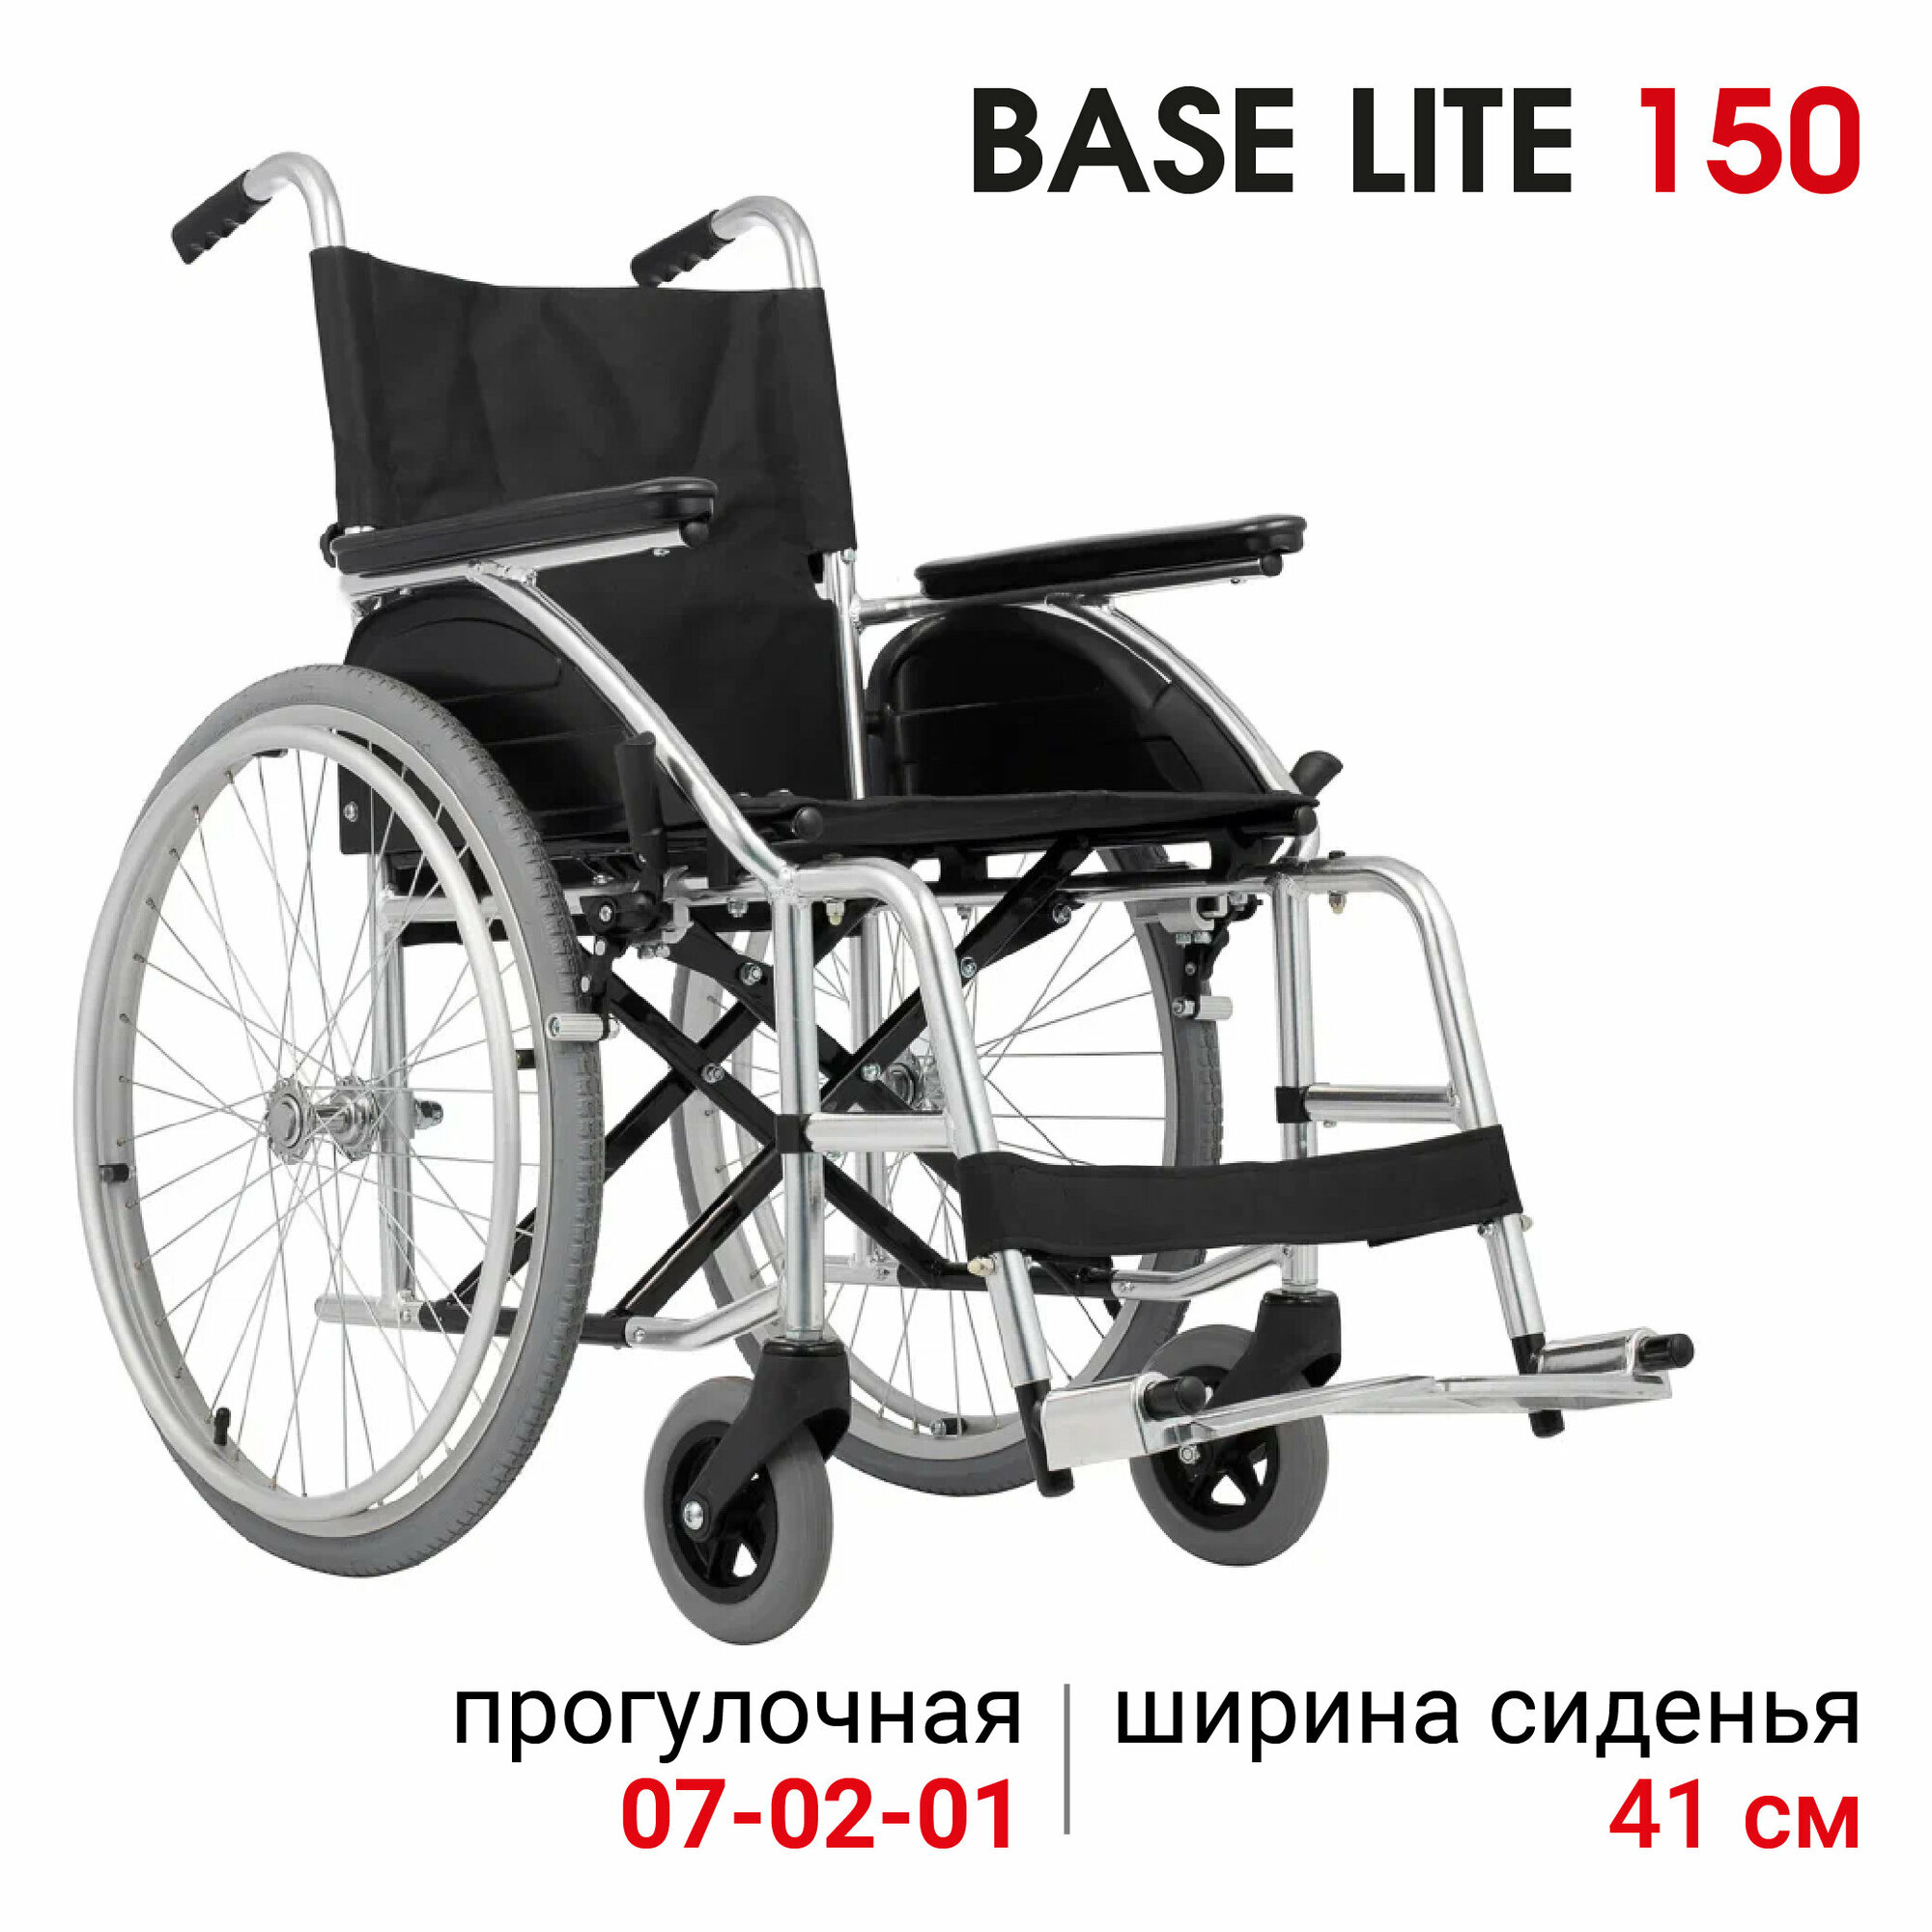 Кресло-коляска прогулочная Ortonica Base 160/Base Lite 150 41PU складная облегченная ширина сиденья 41 см передние литые задние пневматические колеса Код ФСС 7-02-01